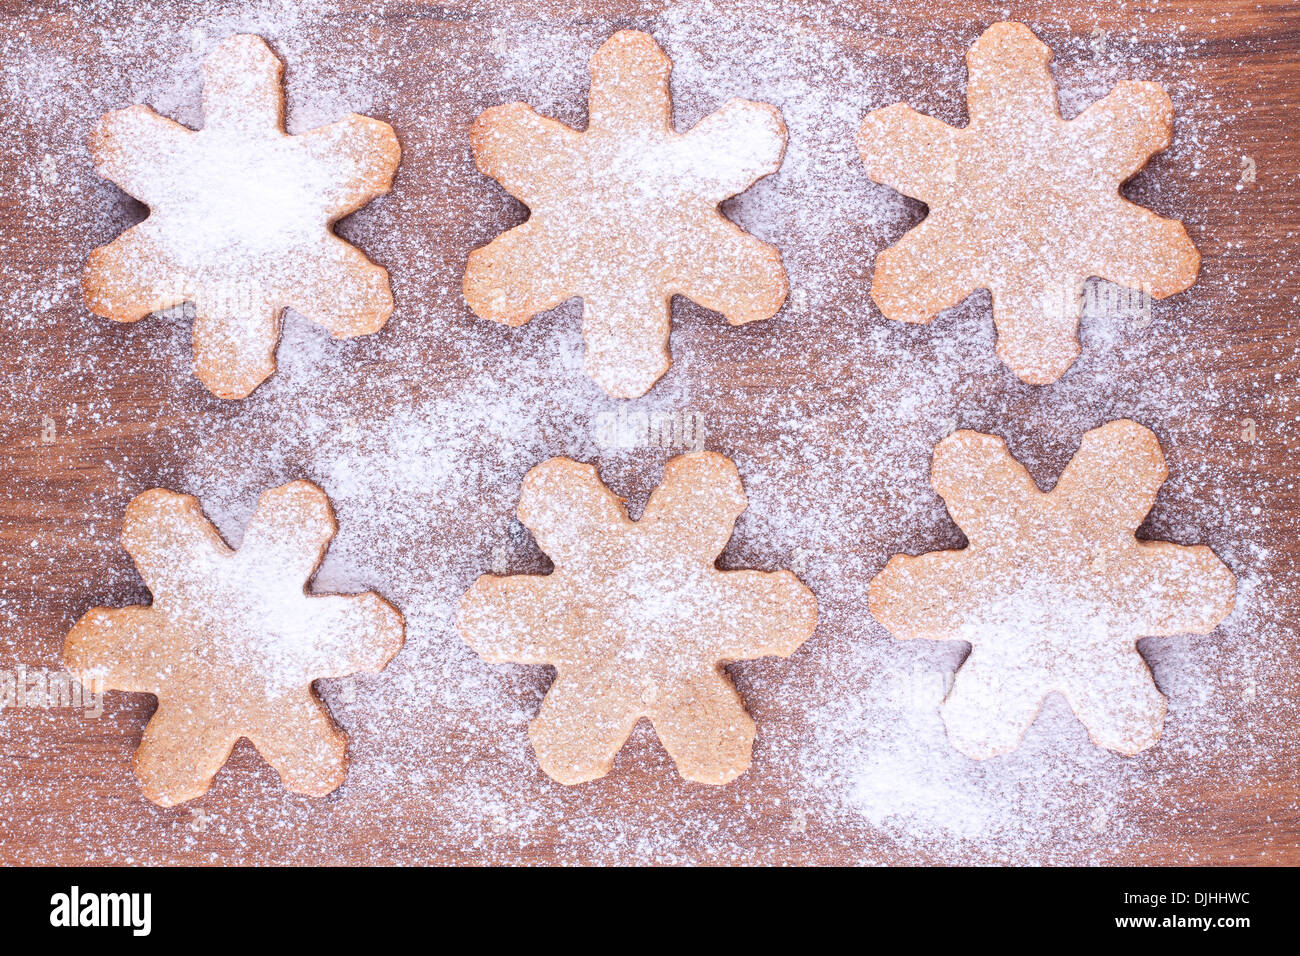 Les cookies en forme de flocon de neige avec de la poussière de sucre sur fond de bois Banque D'Images